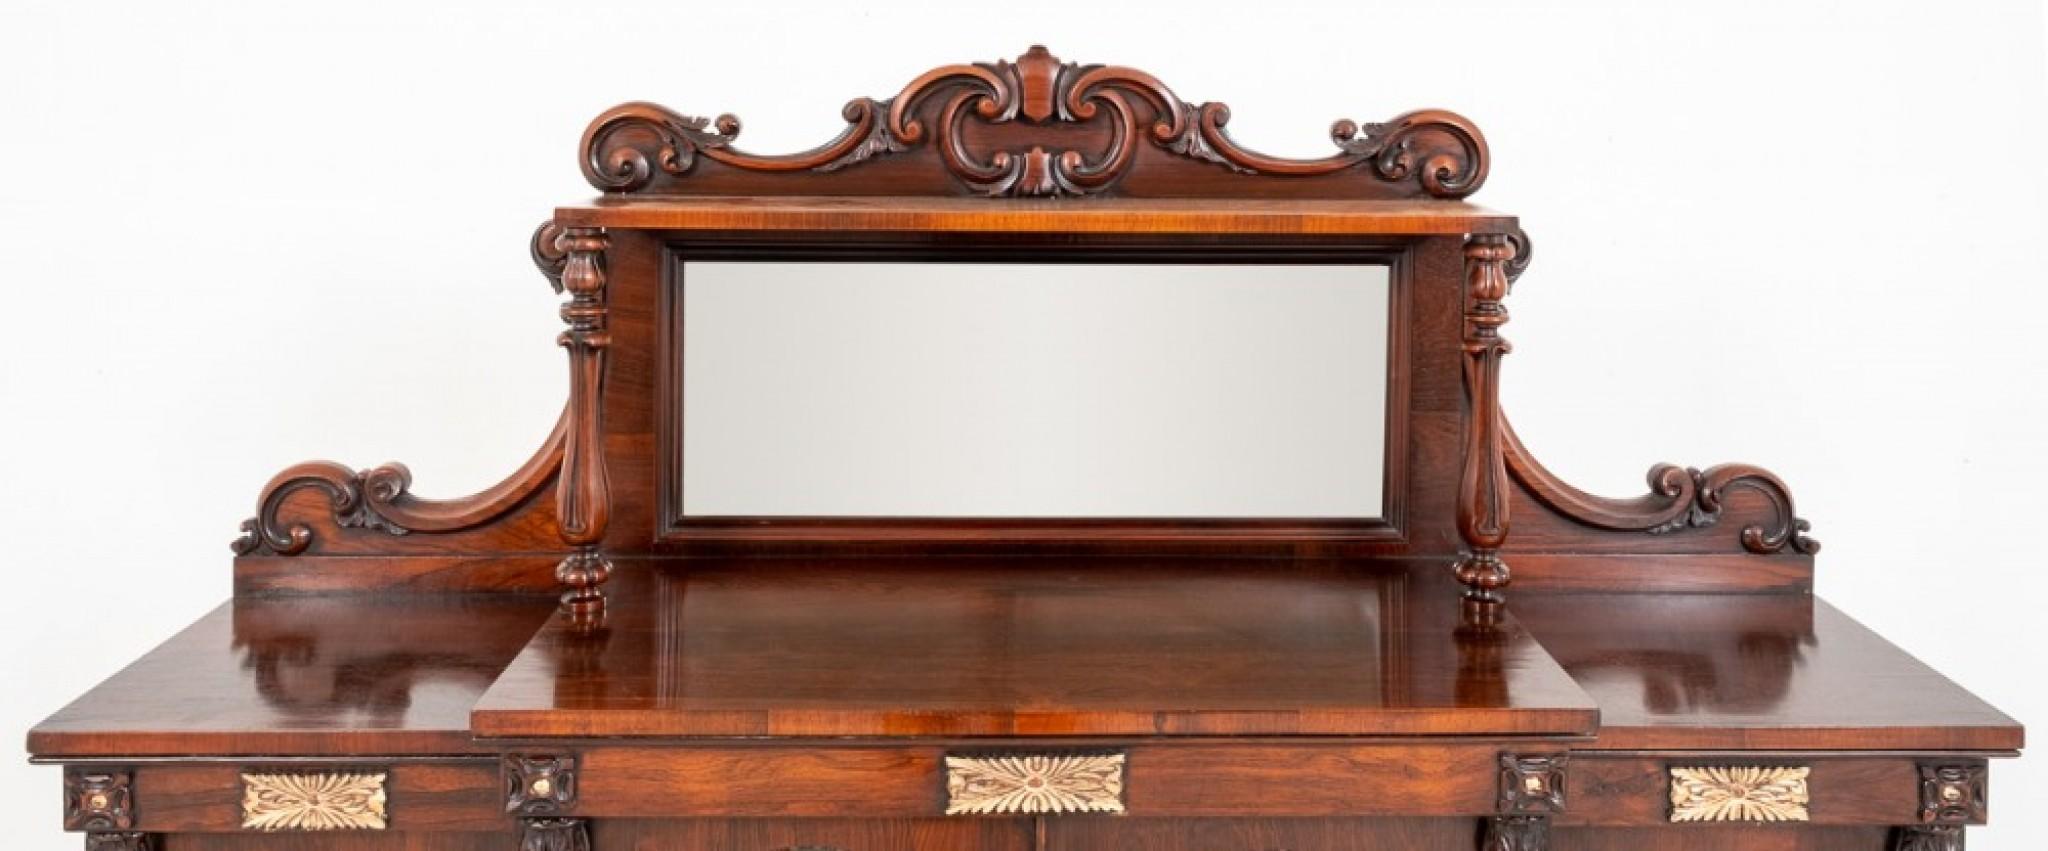 William IV Side Cabinet, Rosewood Sideboard Antique Server For Sale 4